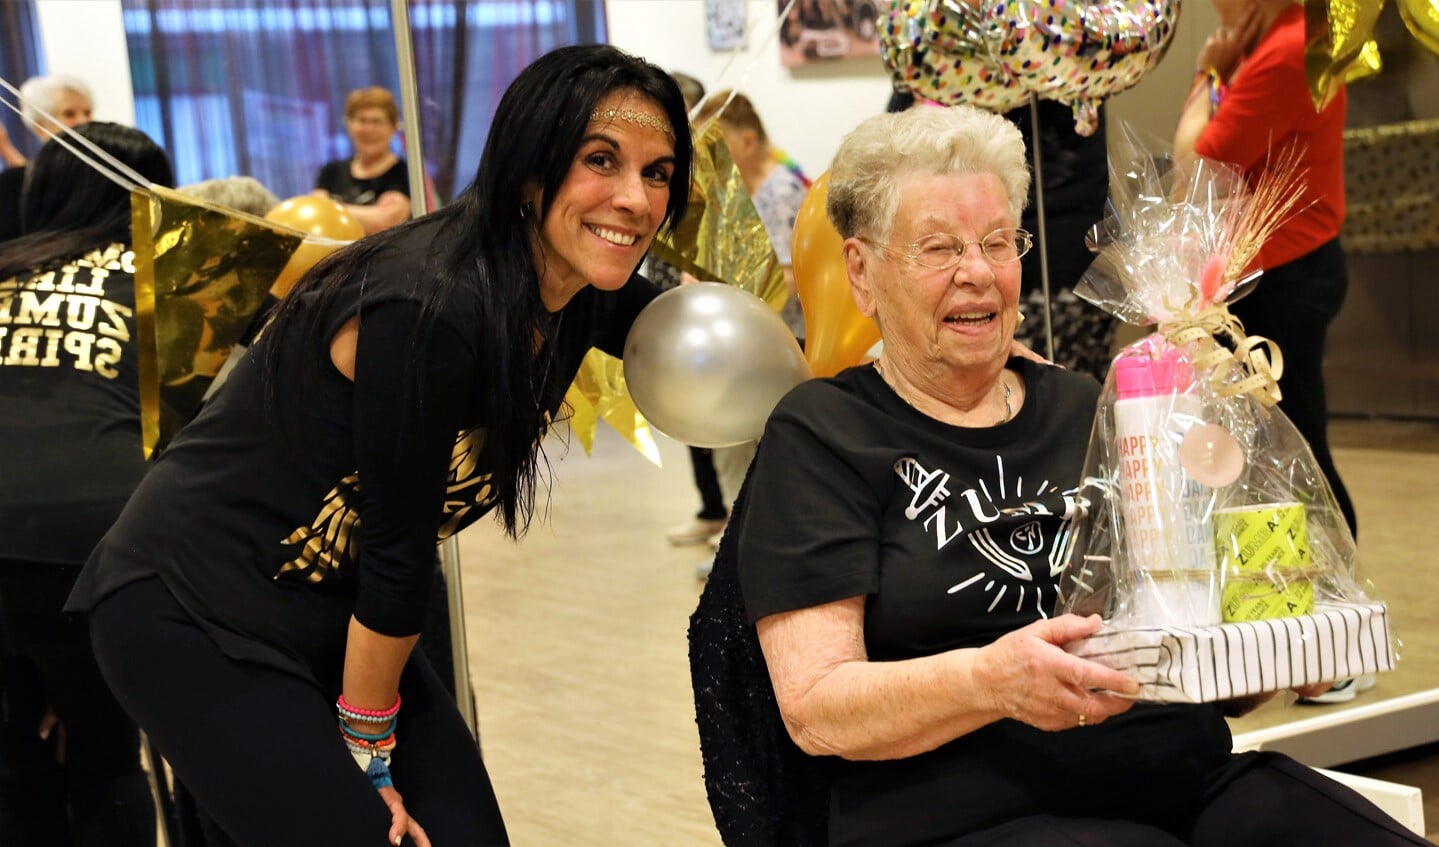 To Voesten krijgt uit handen van Nancy Garcia cadeautjes voor haar 95e verjaardag.